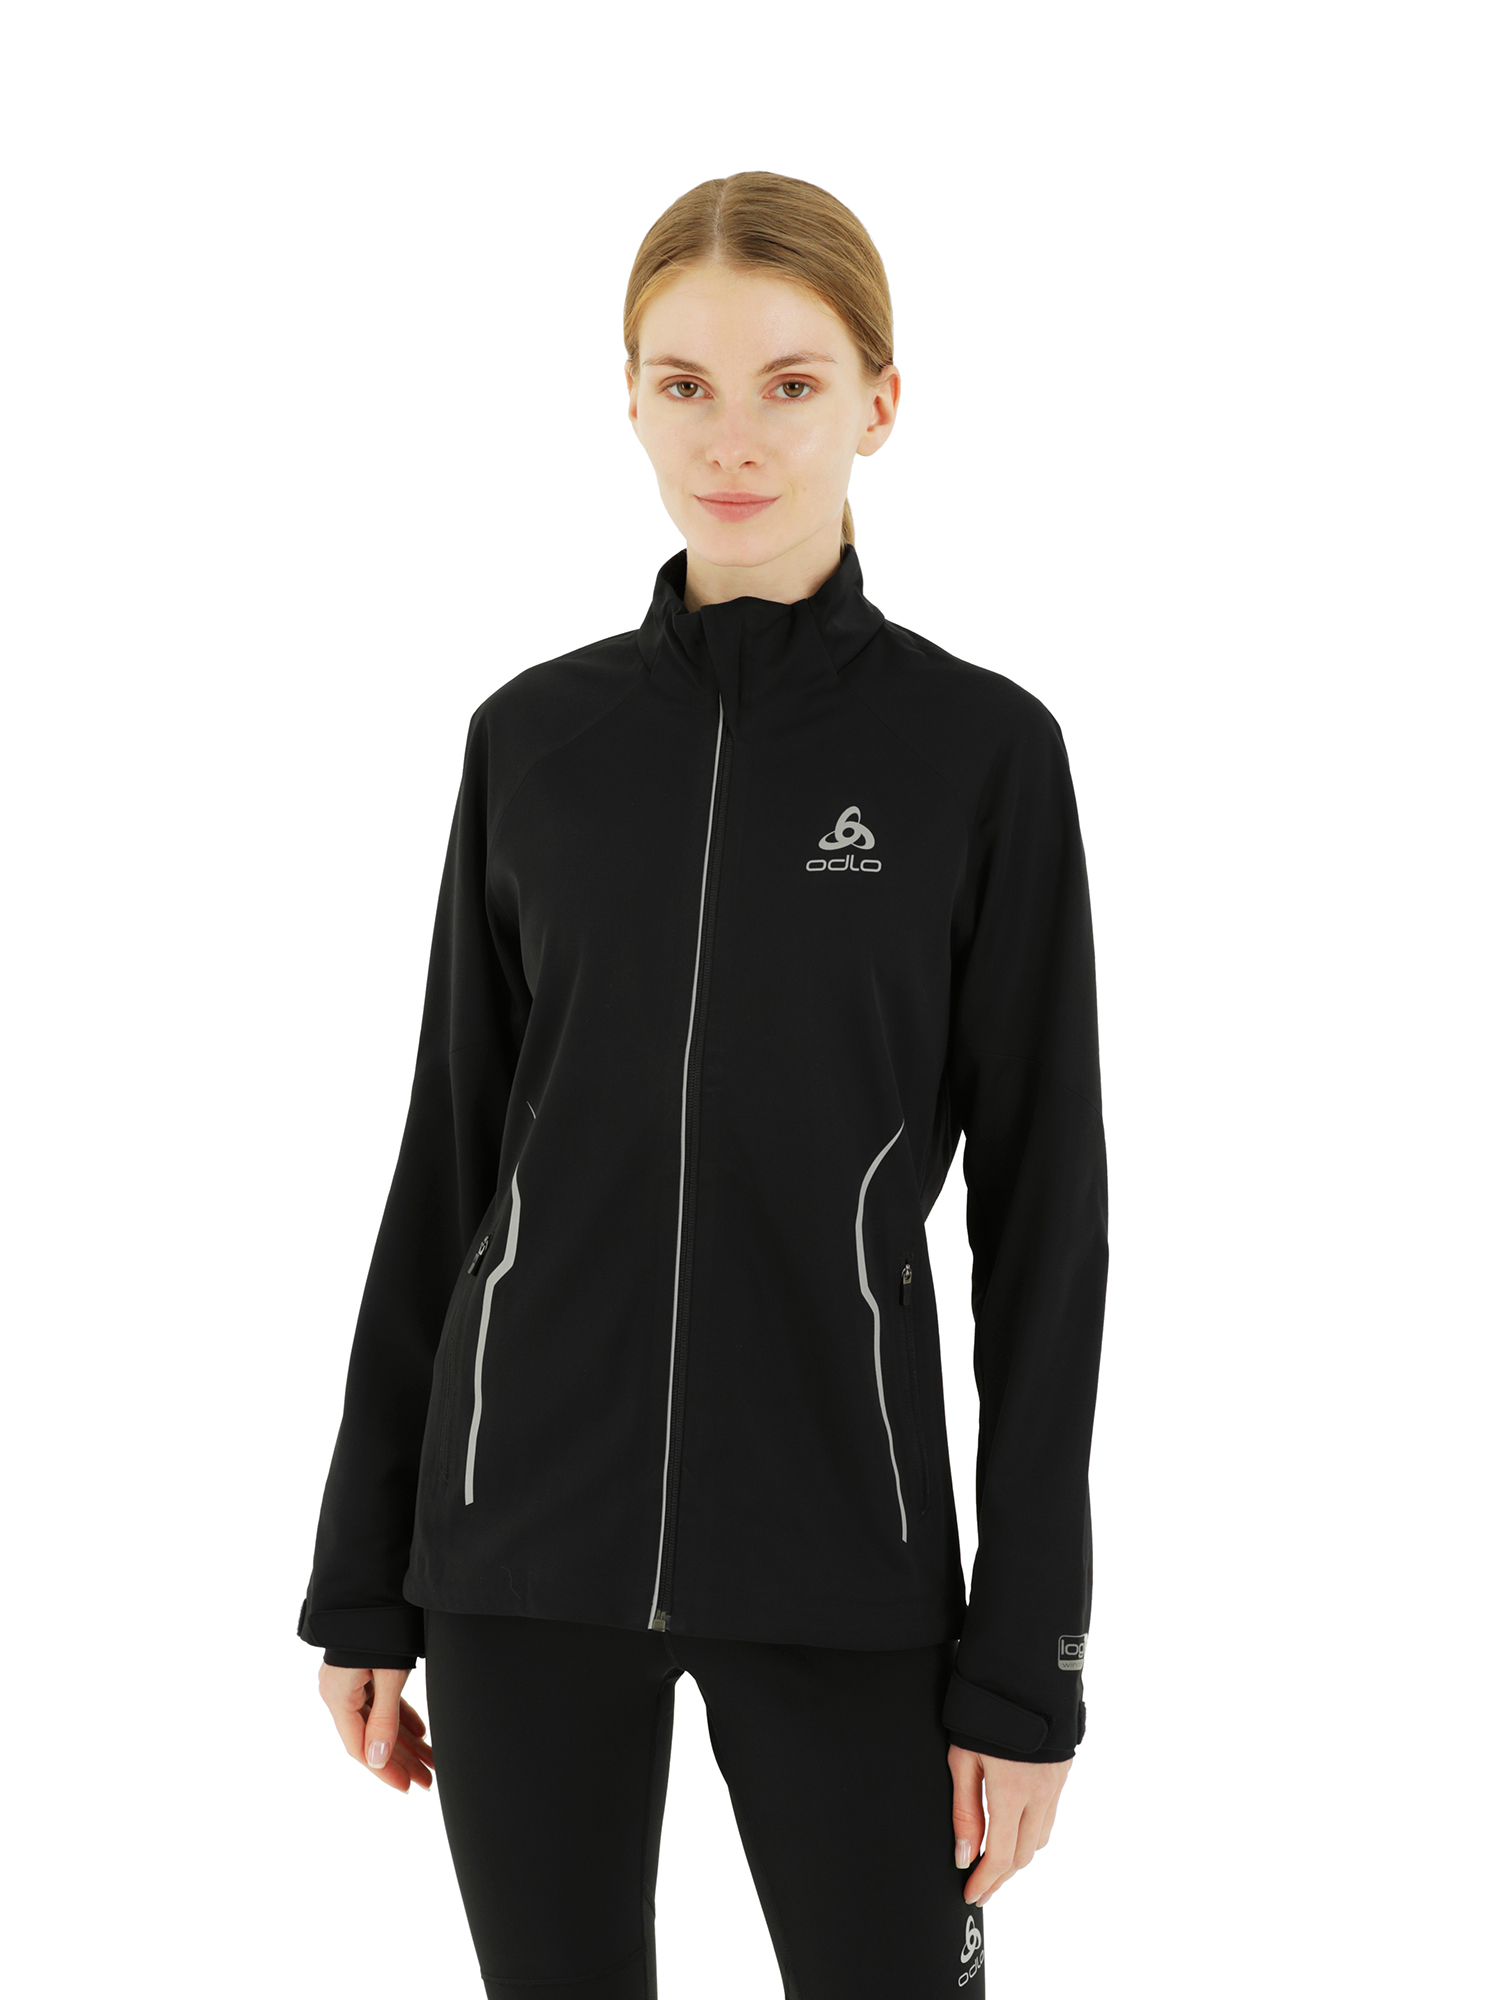 Спортивная ветровка женская Odlo Jacket Gravity W черная XL